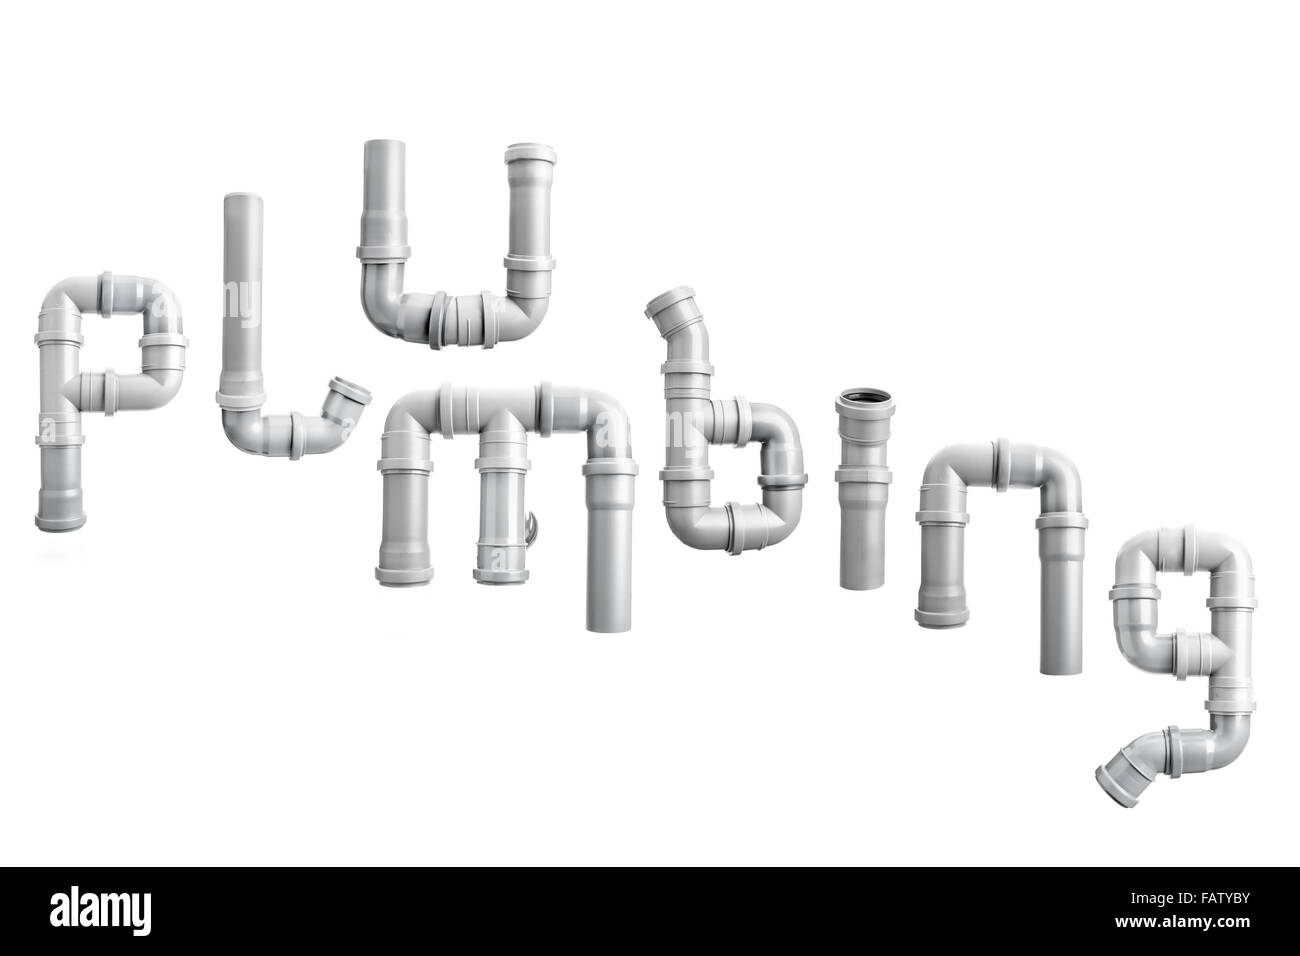 Mot de plomberie organisé à partir de différents éléments de tuyauterie PVC shot on white Banque D'Images